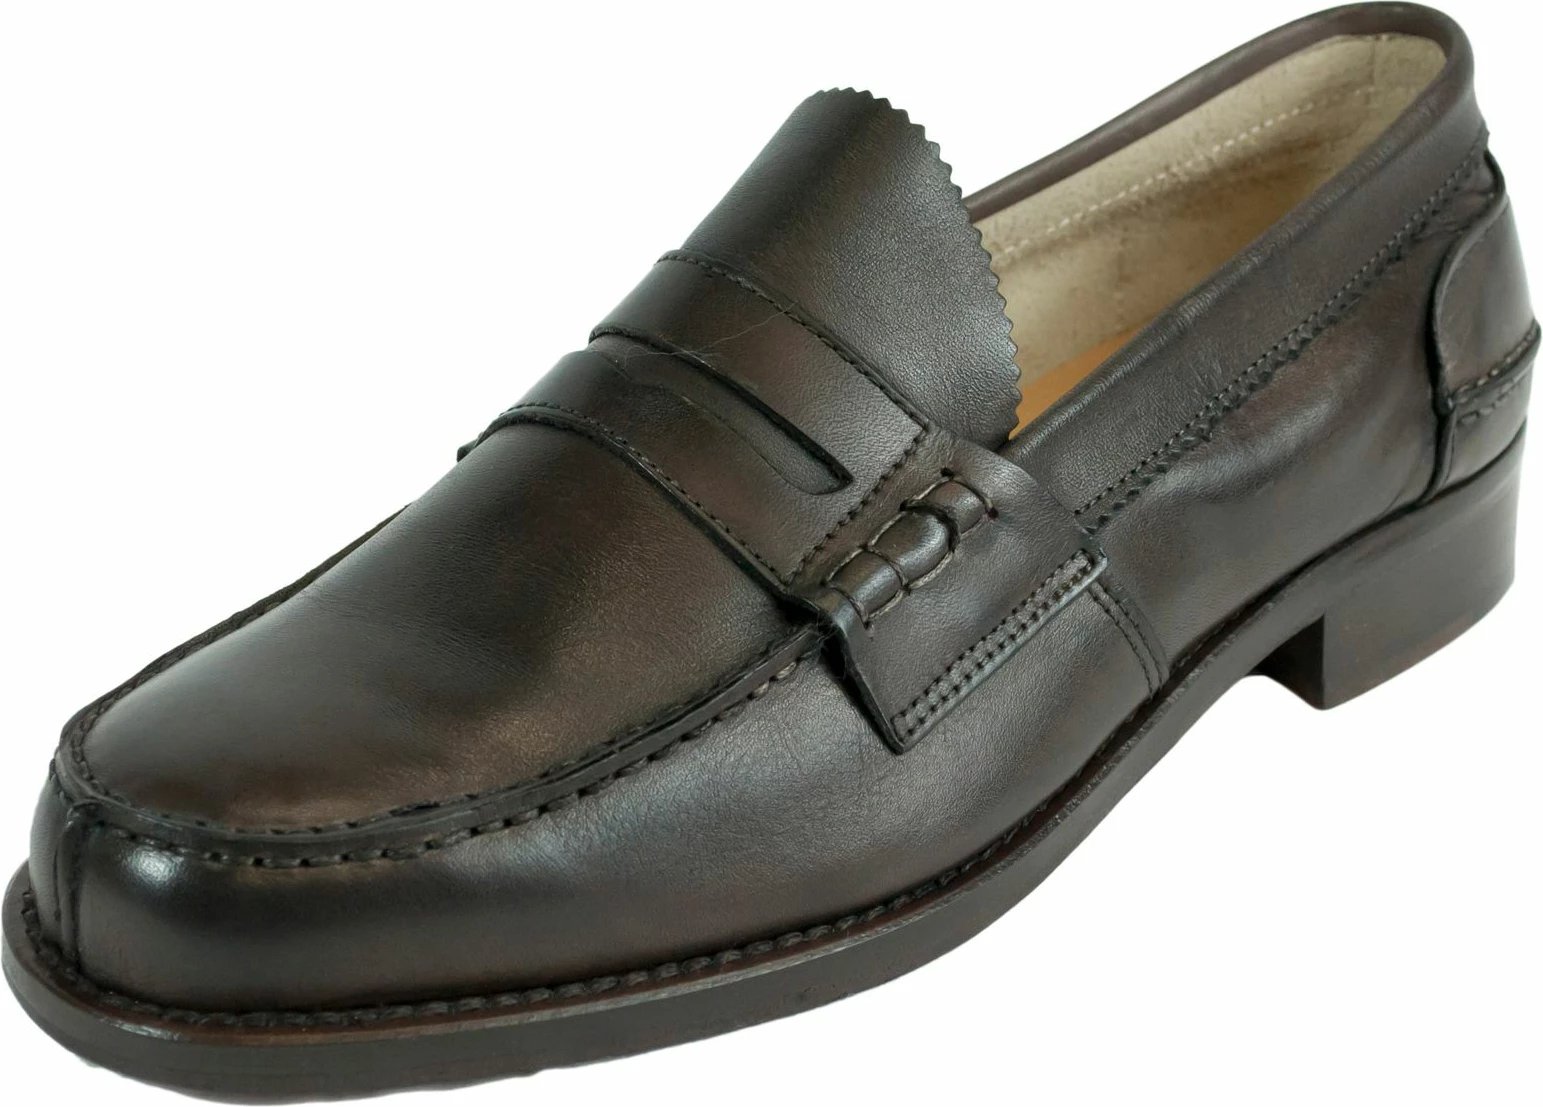 Këpucë për meshkuj Saxone of Scotland, të kafta